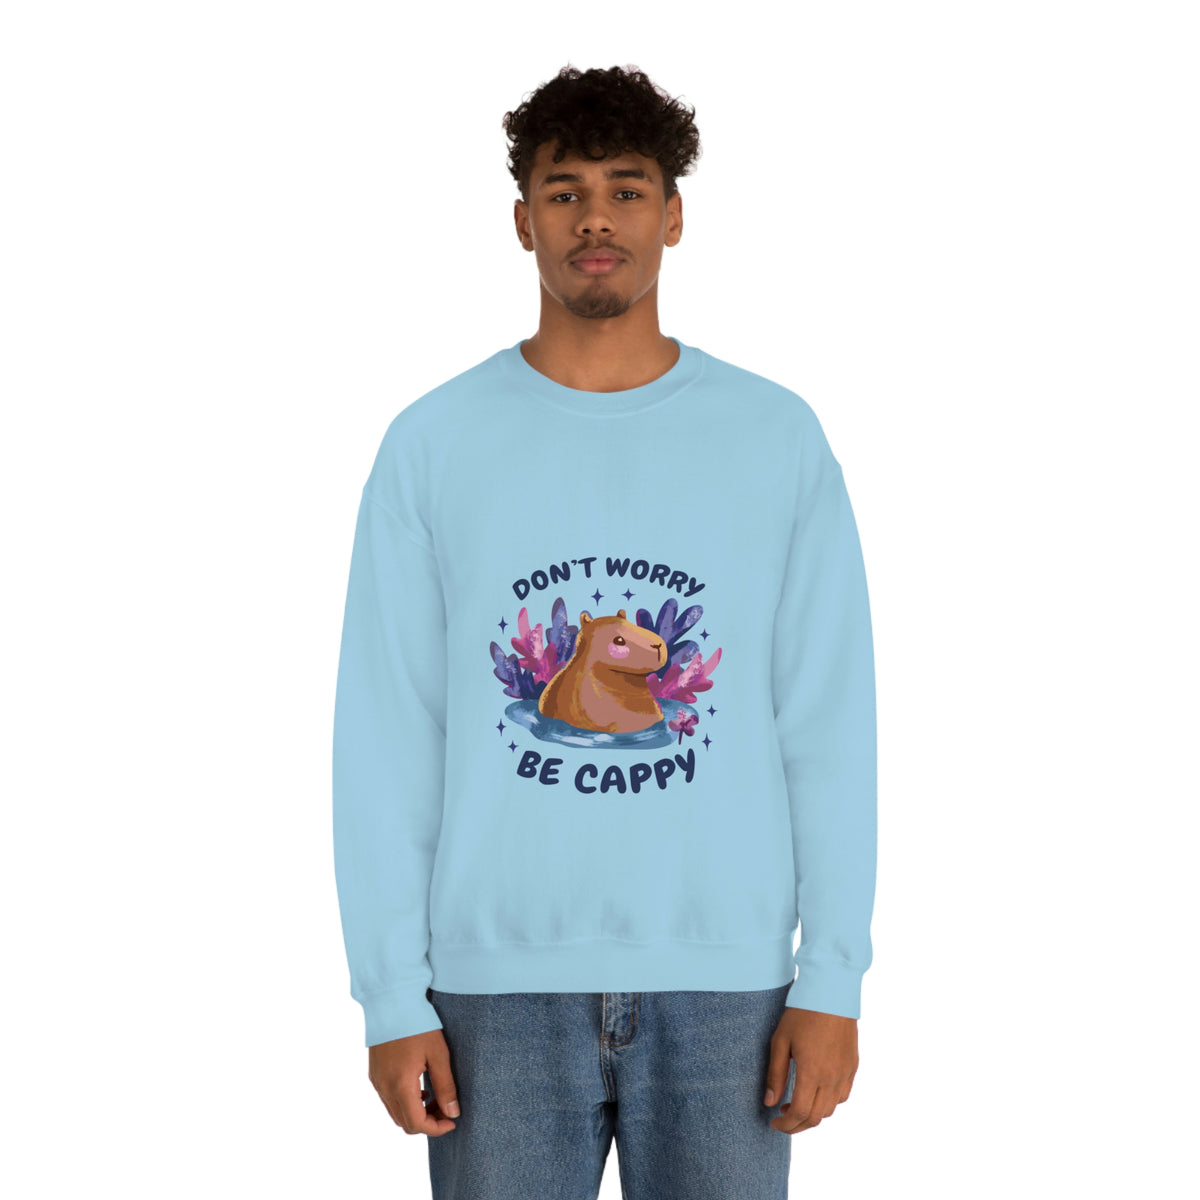 Chill Capybara - Unisex Sweatshirt